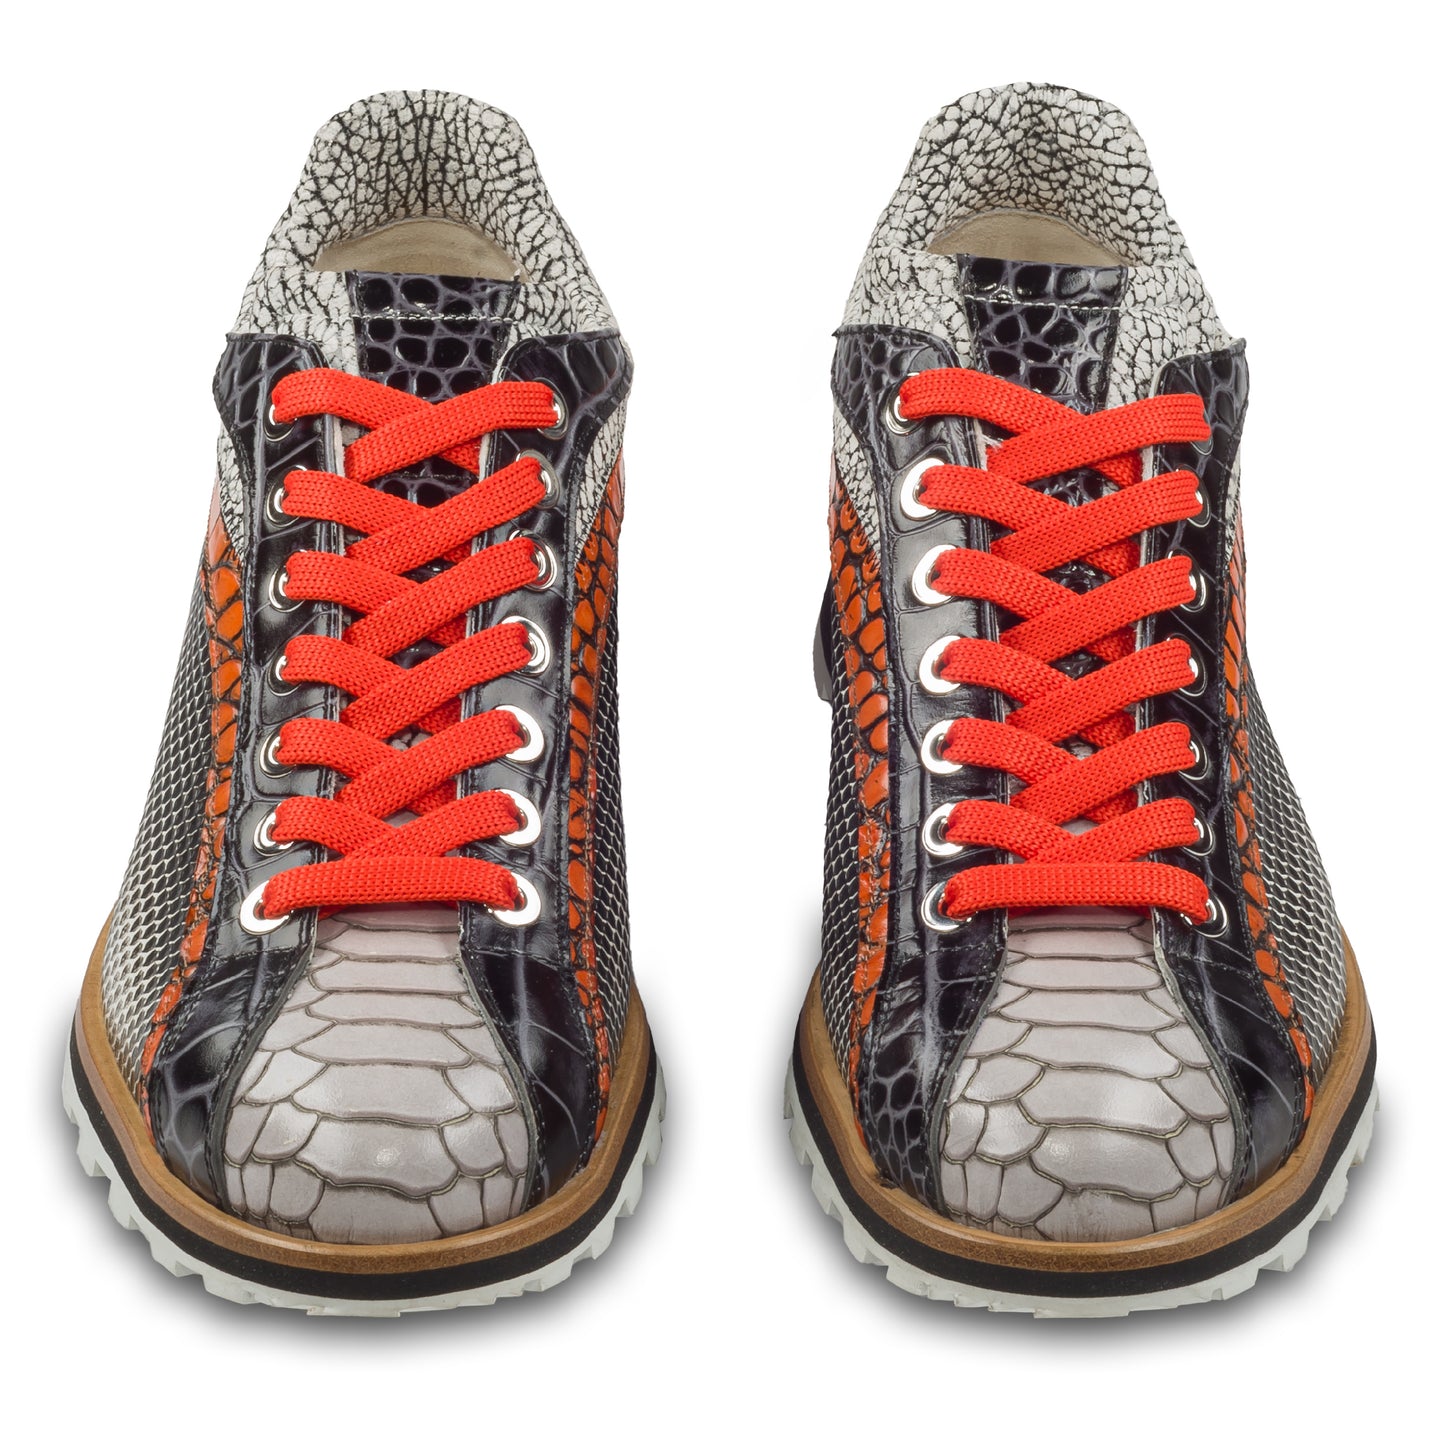 Lorenzi Herren Leder-Sneaker mit raffinierter Prägung in schwarz / weiß / orange. Handgefertigt. Paarweise Ansicht von vorne. Schnürsenkel in leuchtend orange.